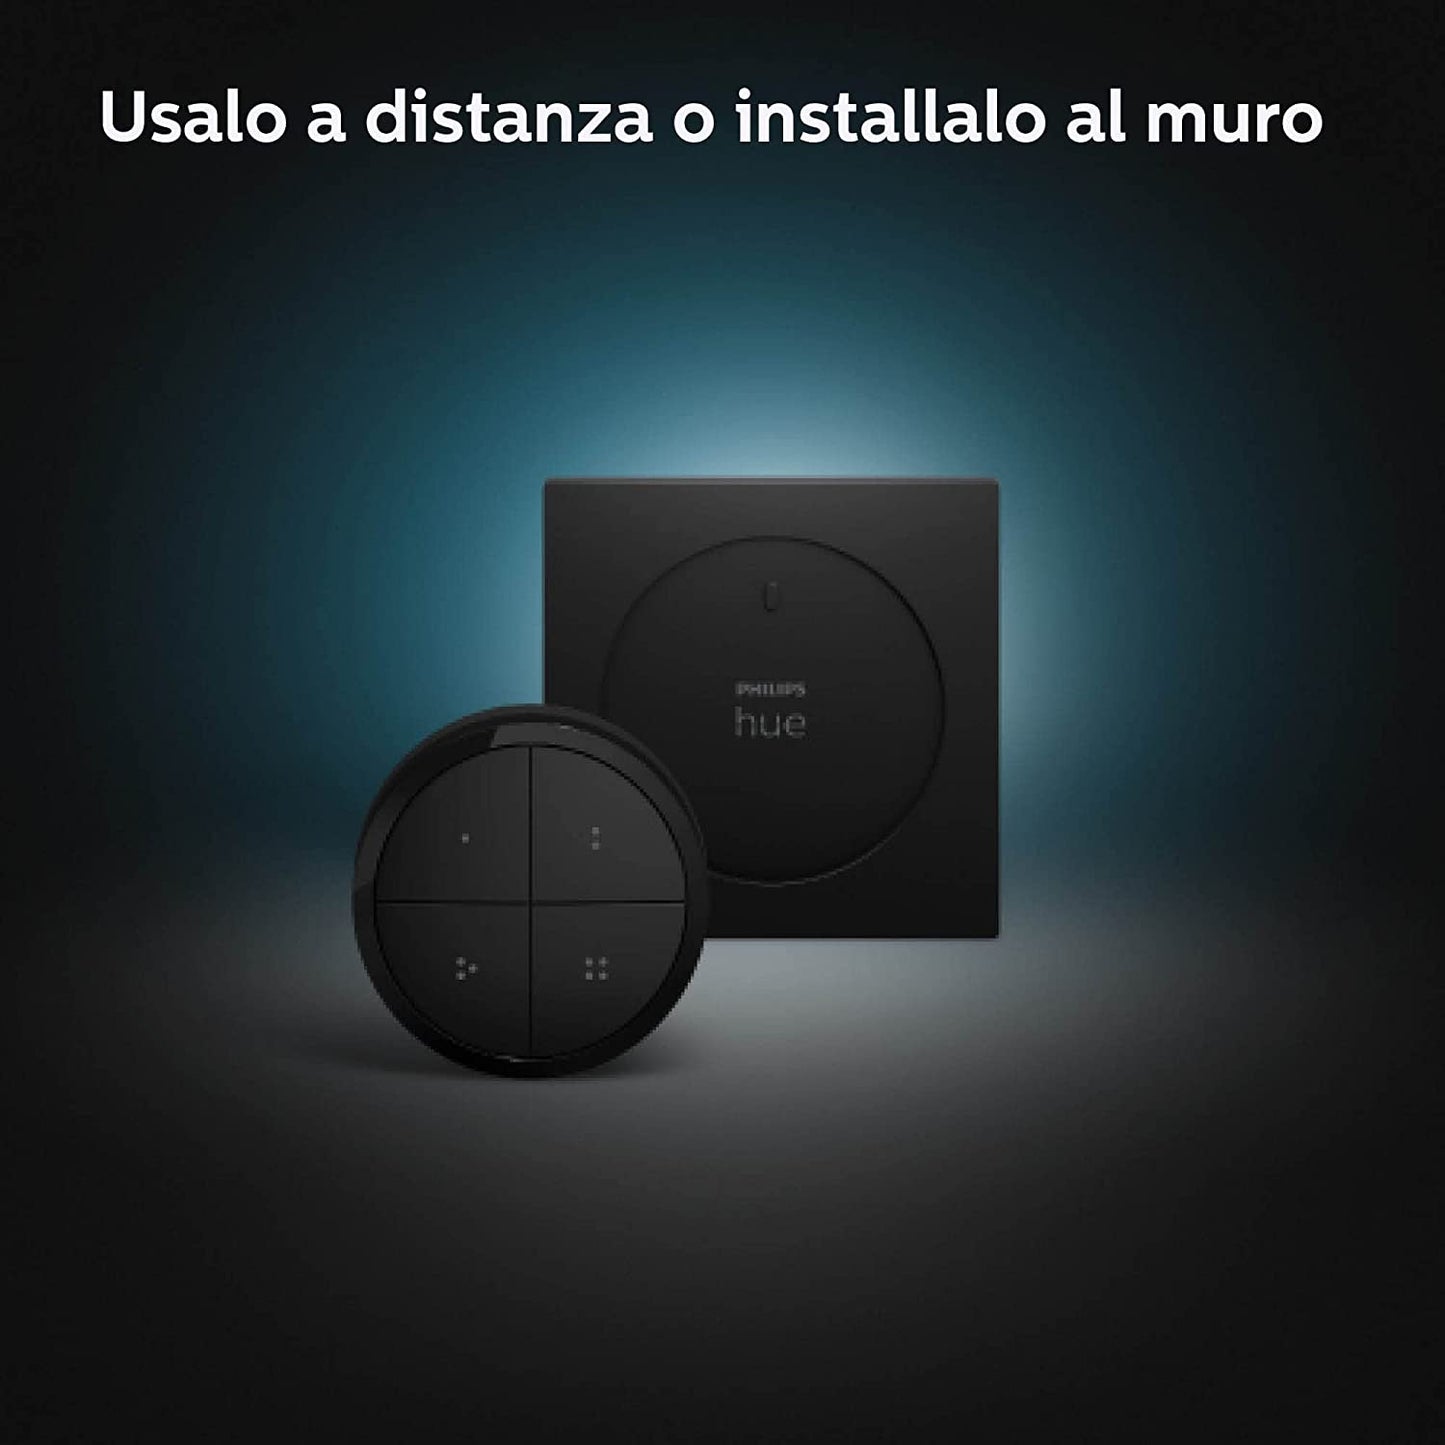 Philips Hue Interruttore Tap Dial Smart, Alimentazione a Batteria, Nero - 44093700